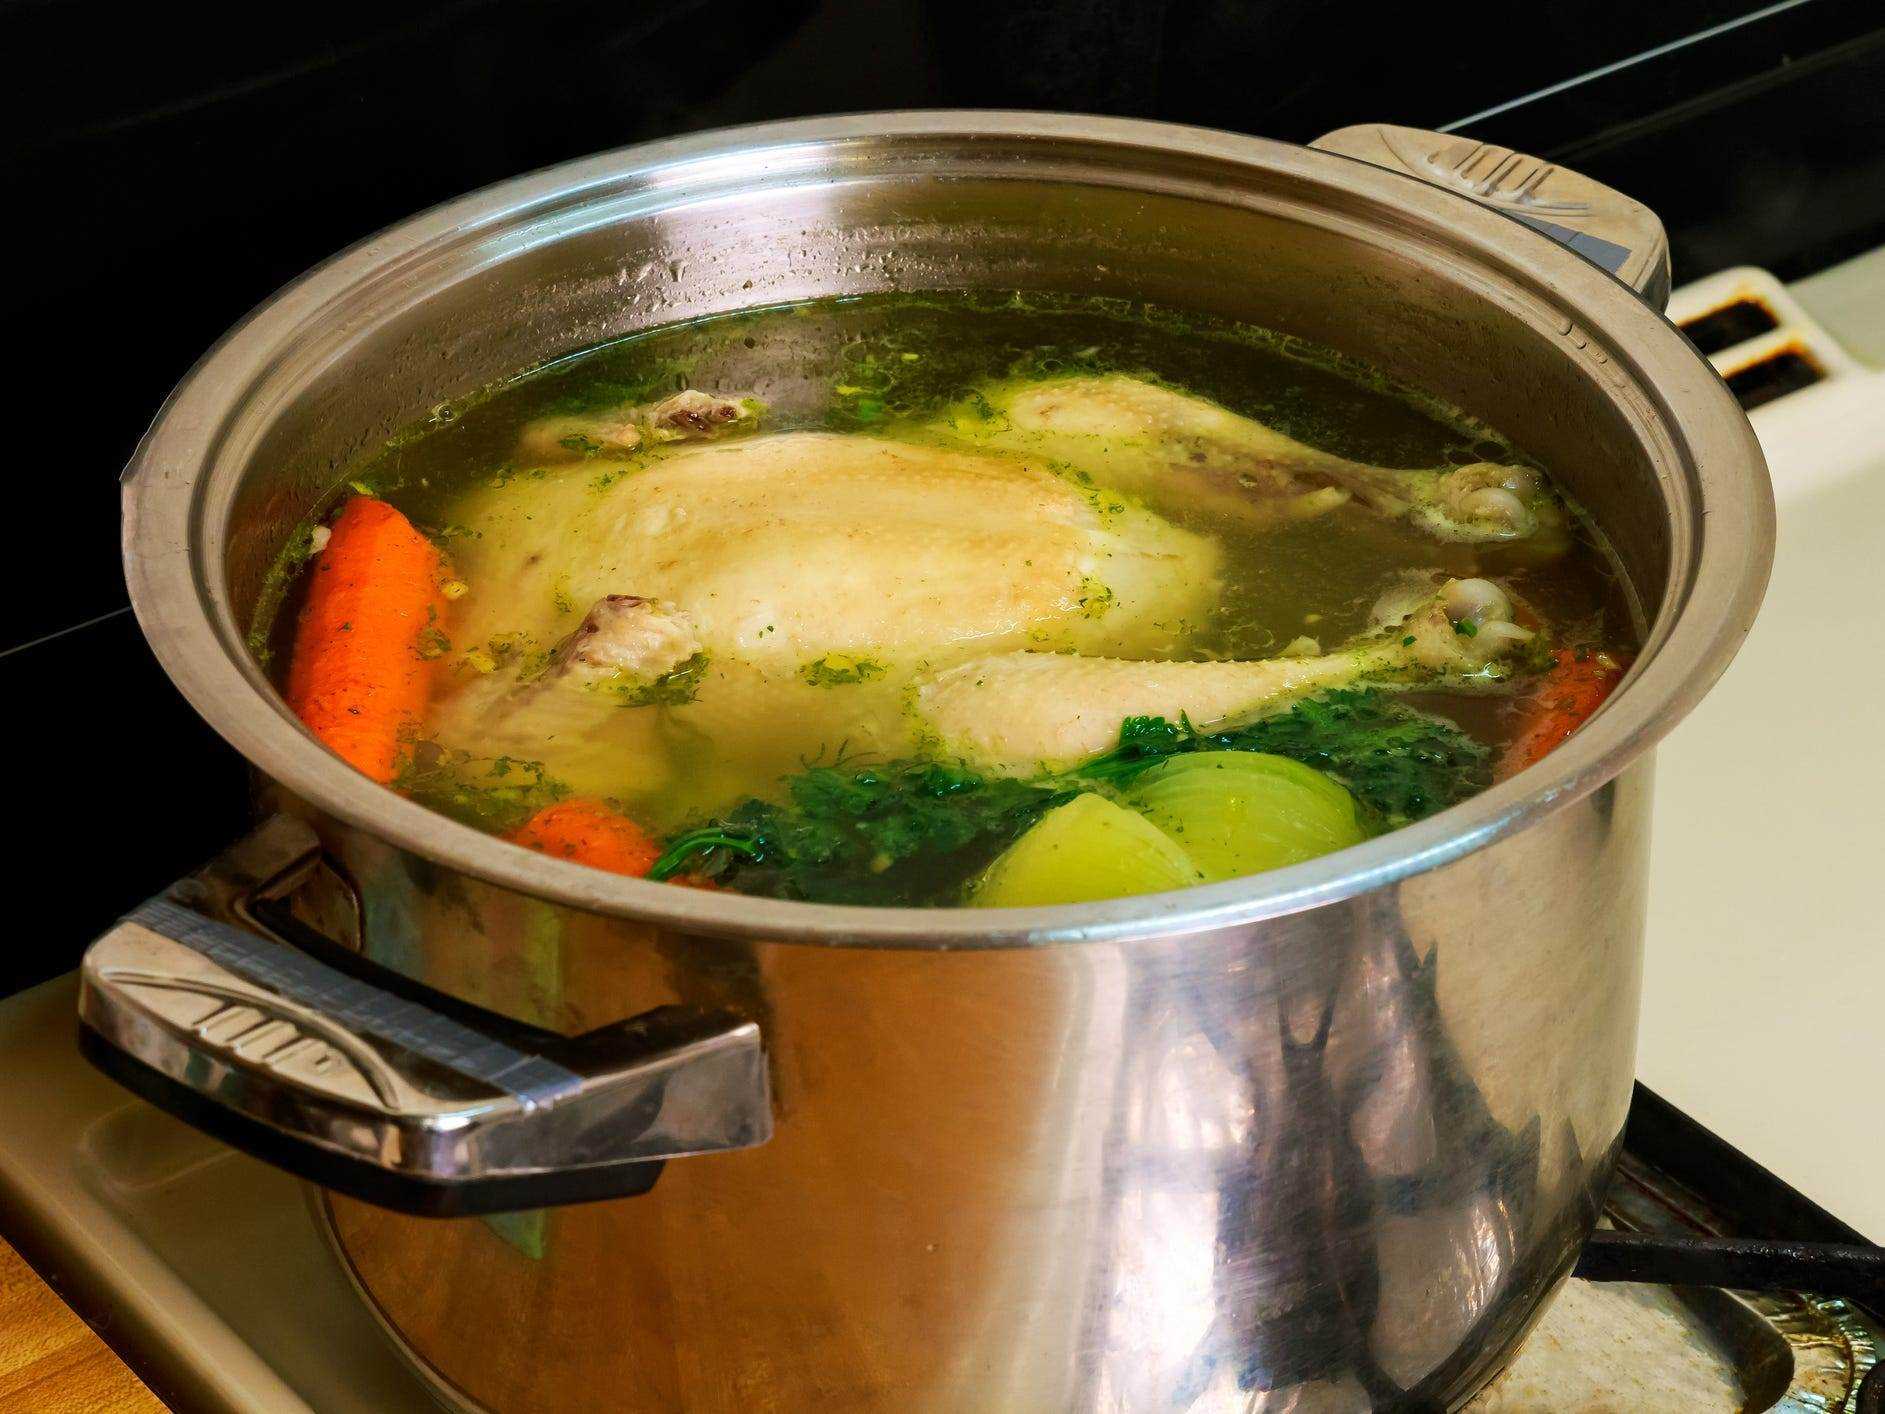 Ein ganzes Huhn, das in einem Topf mit Wasser mit Kräutern und Gemüse gekocht wird